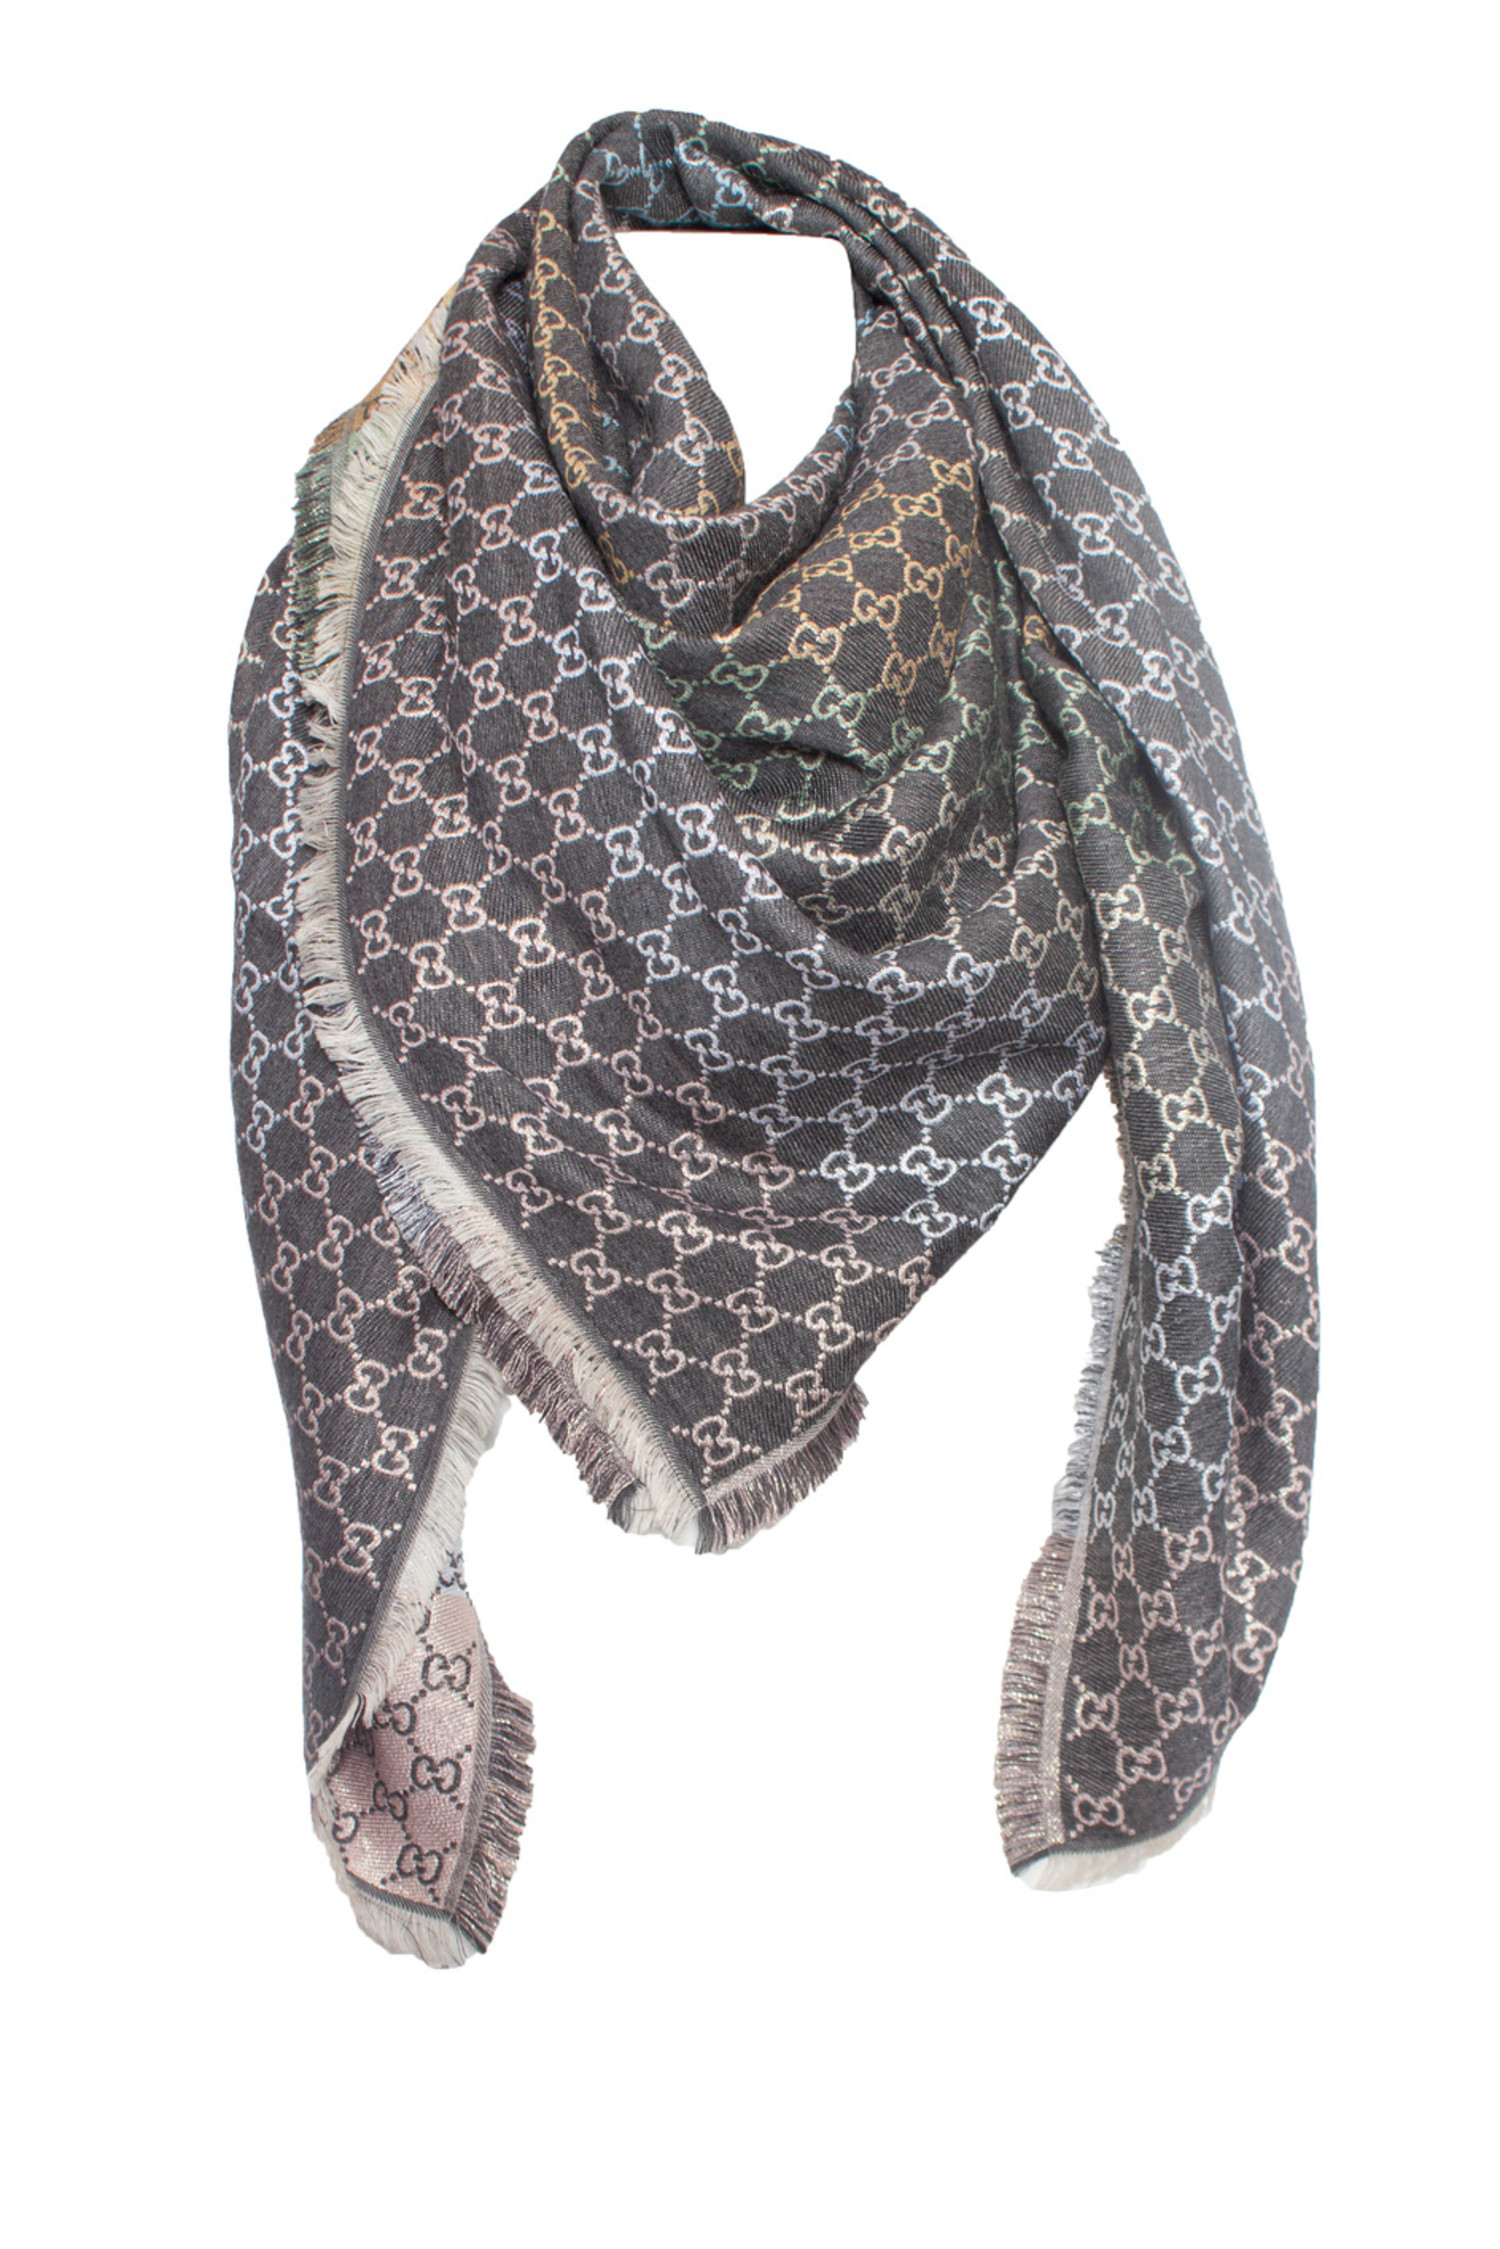 Dan halfrond Onderzoek Gucci, sjaal met lurex GG print - Unique Designer Pieces